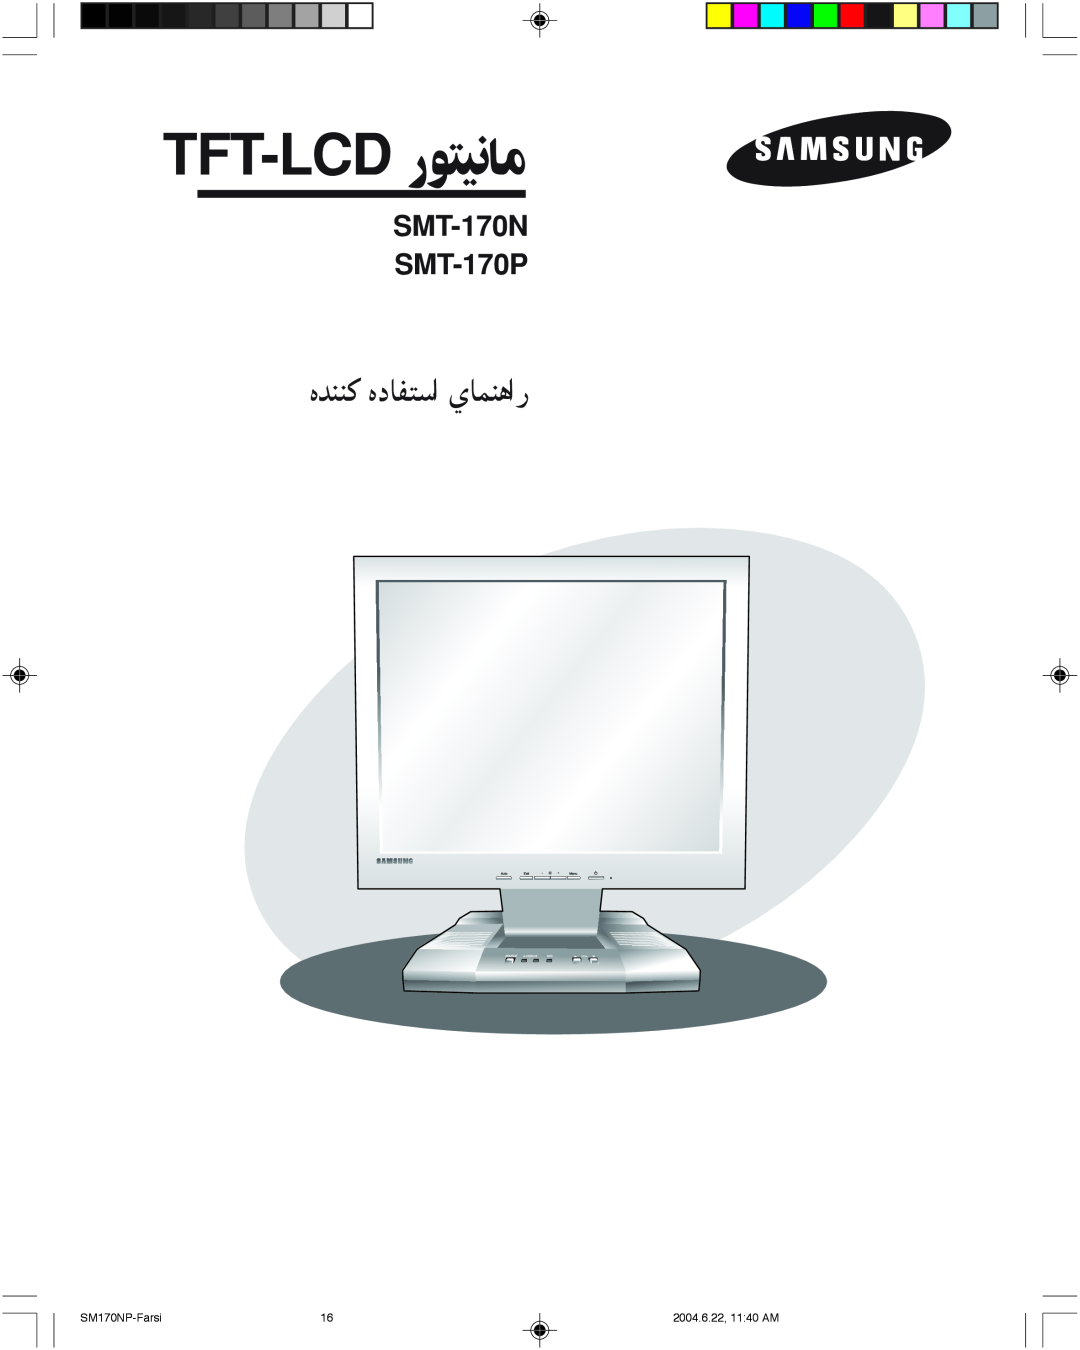 Samsung manual Tft-Lcd رﻮﺘﻴﻧﺎﻣ, هﺪﻨﻨﻛ هدﺎﻔﺘﺳا يﺎﻤﻨﻫار, SMT-170N SMT-170P, SM170NP-Farsi, 2004.6.22, 1140 AM 